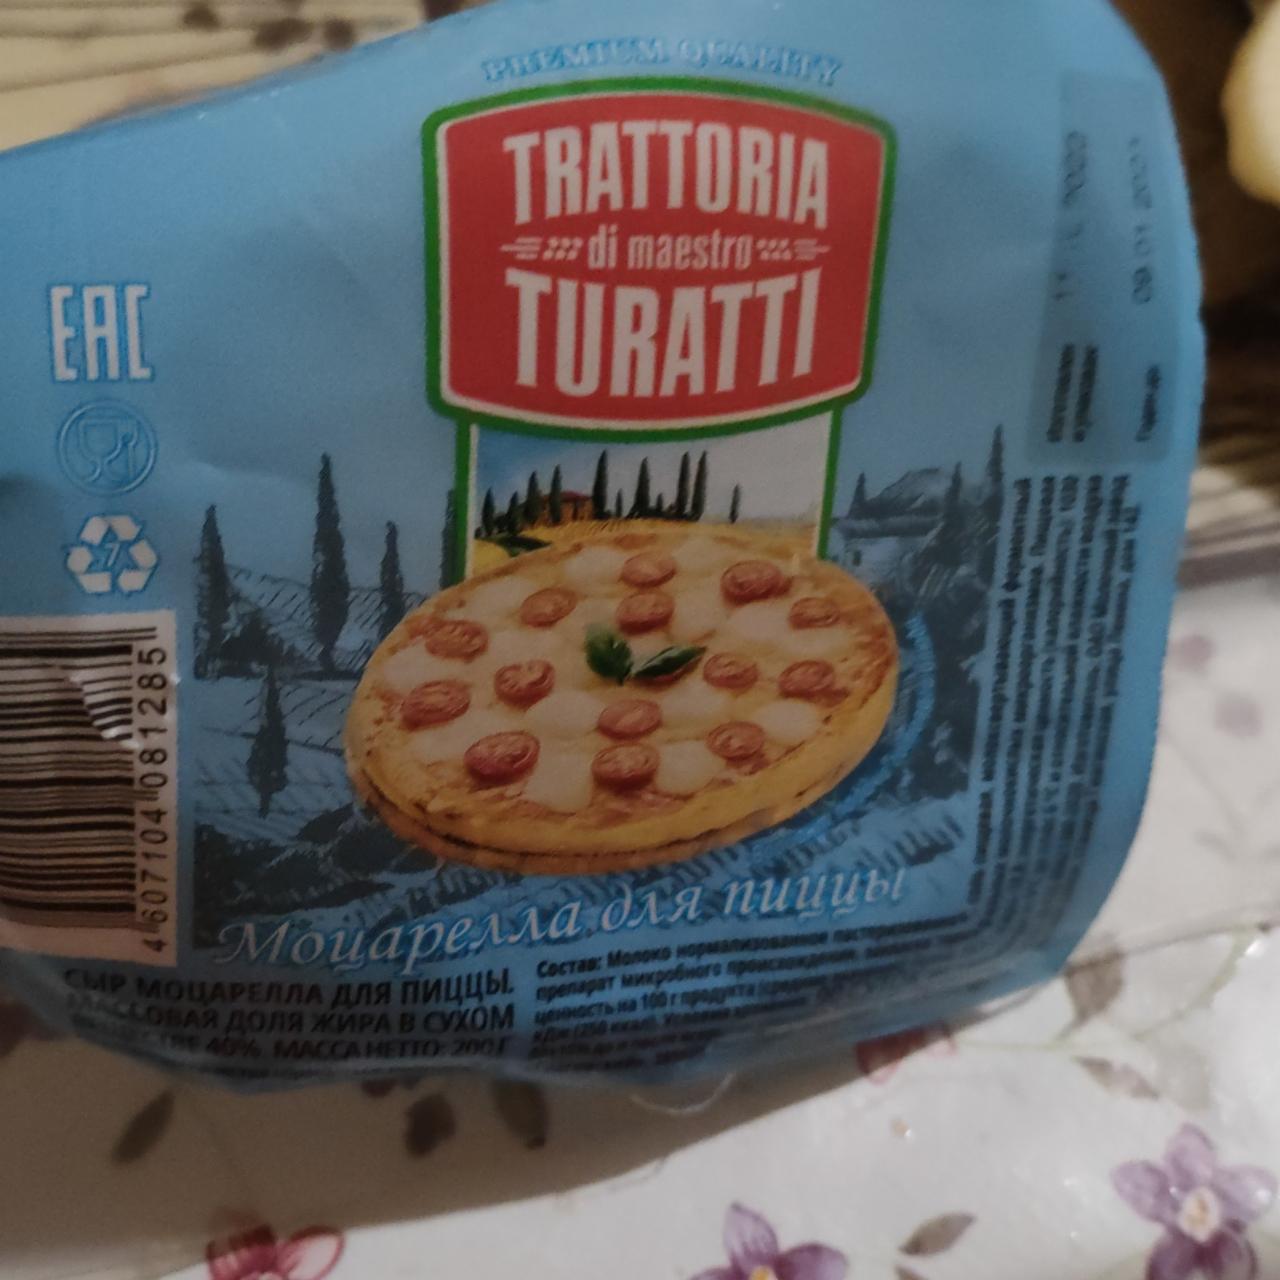 Фото - Моцарелла для пиццы Trattoria di maestro Turatti